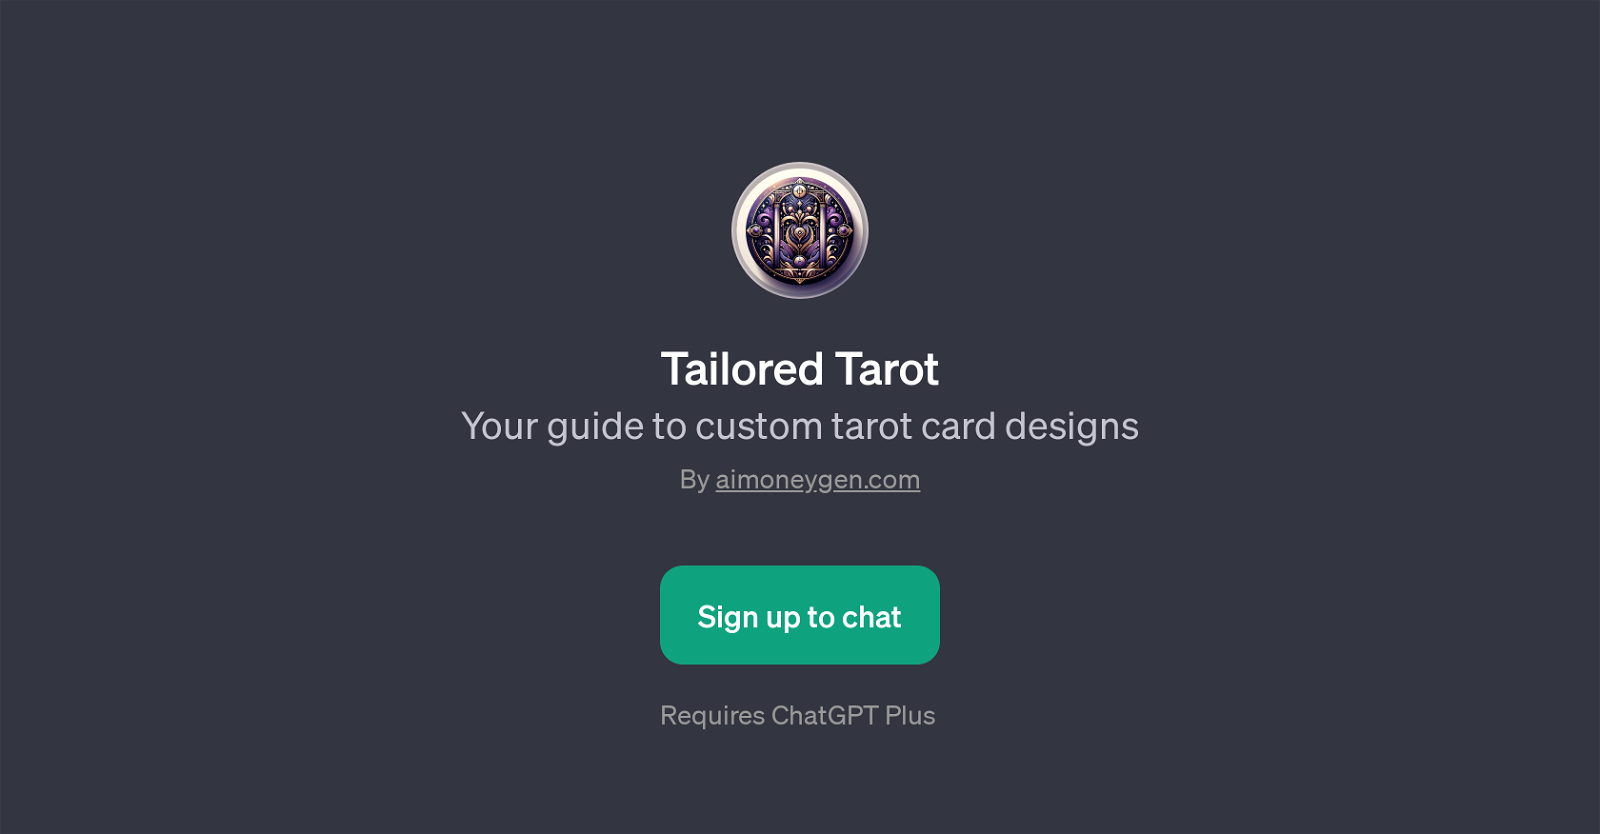 Tailored Tarot website